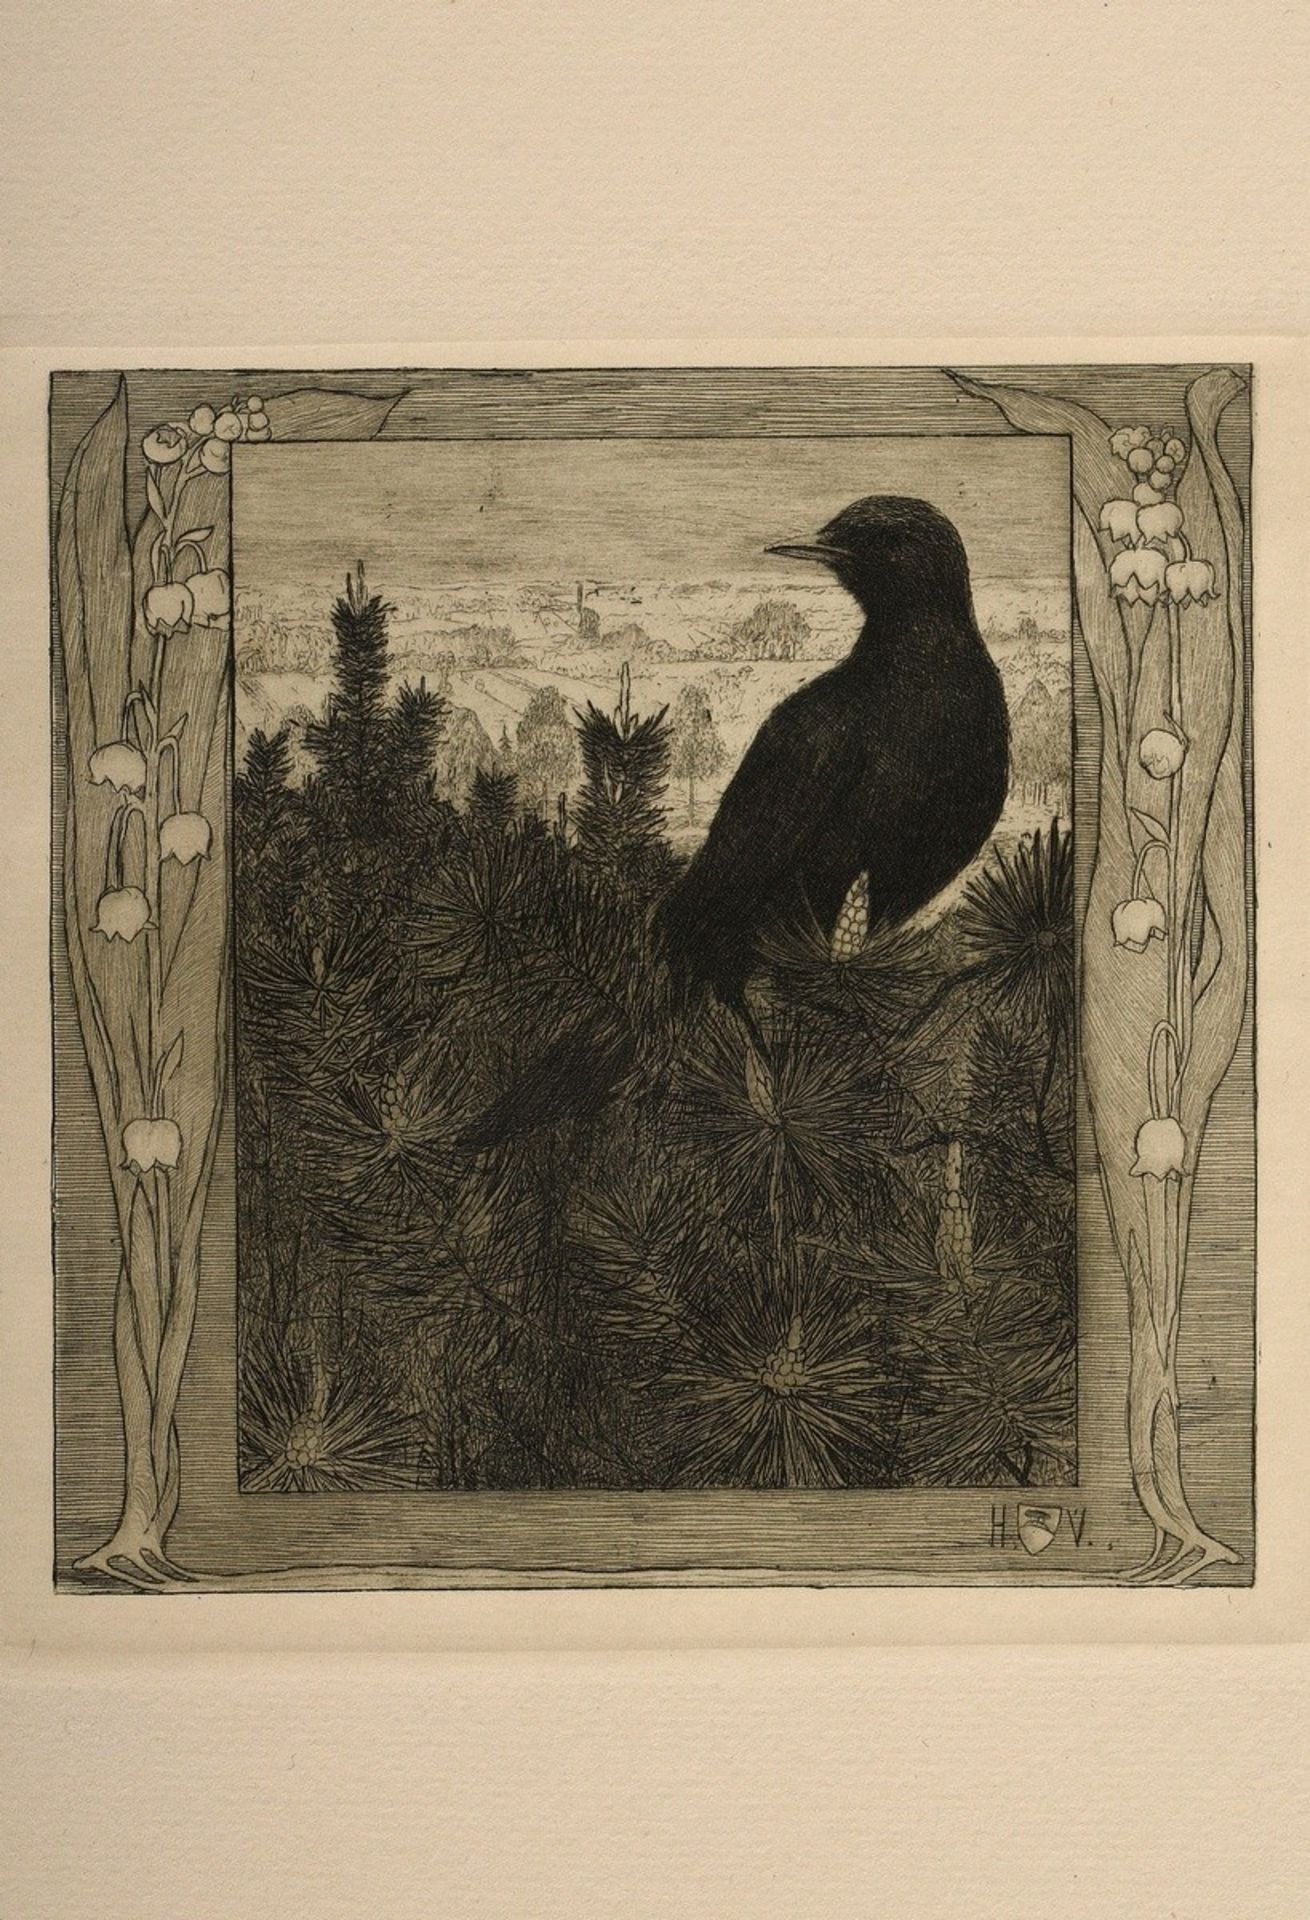 Vogeler, Heinrich (1872-1942) "An den Frühling" 1899/1901, Mappe mit 10 Radierungen und Vorblatt, P - Bild 11 aus 25